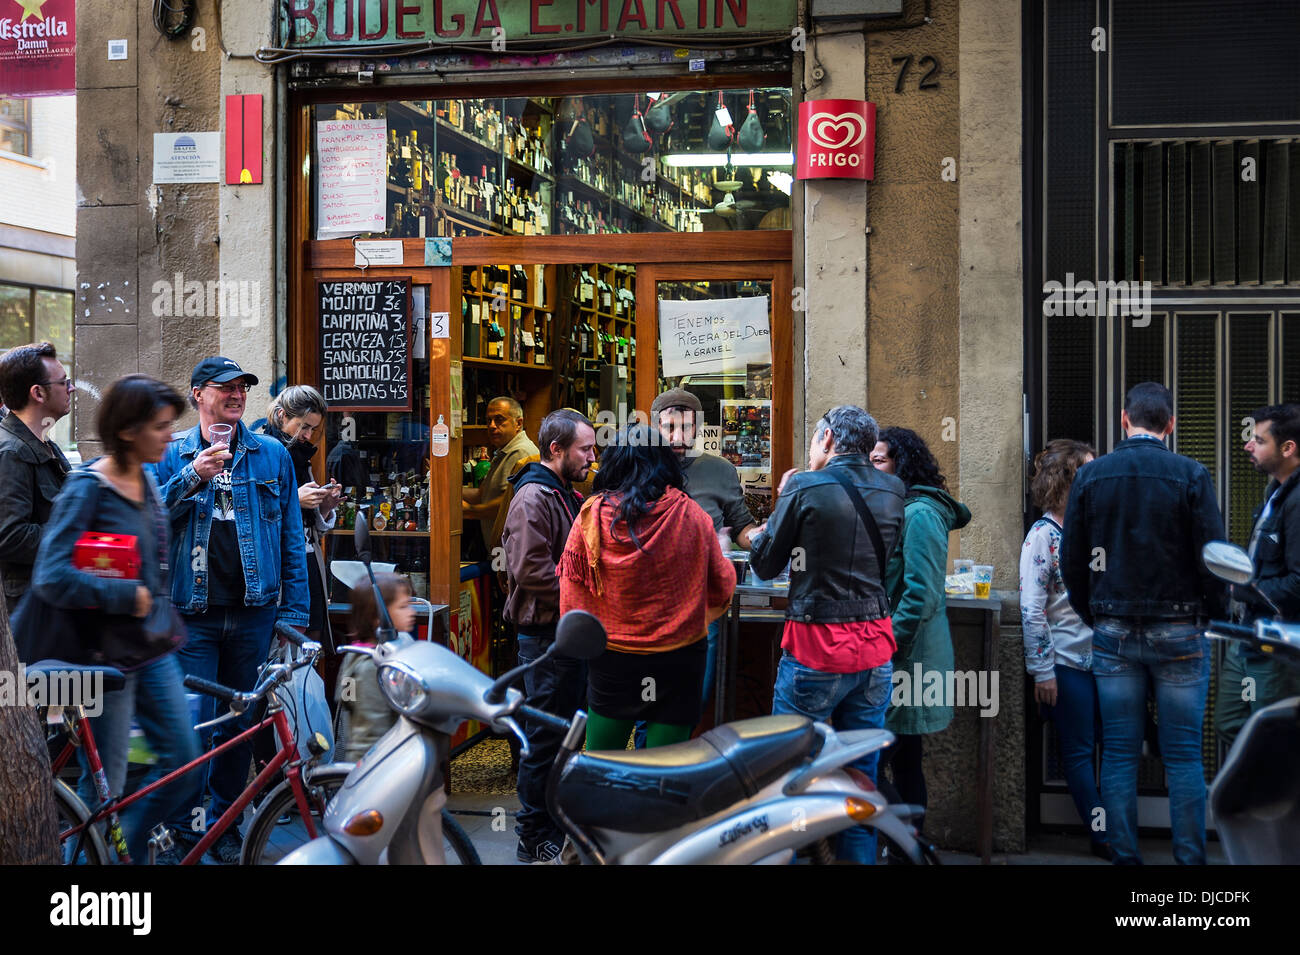 Bodega patronos derrame hacia la calle, para socializar y consumir vino y cerveza, Barcelona, España Foto de stock